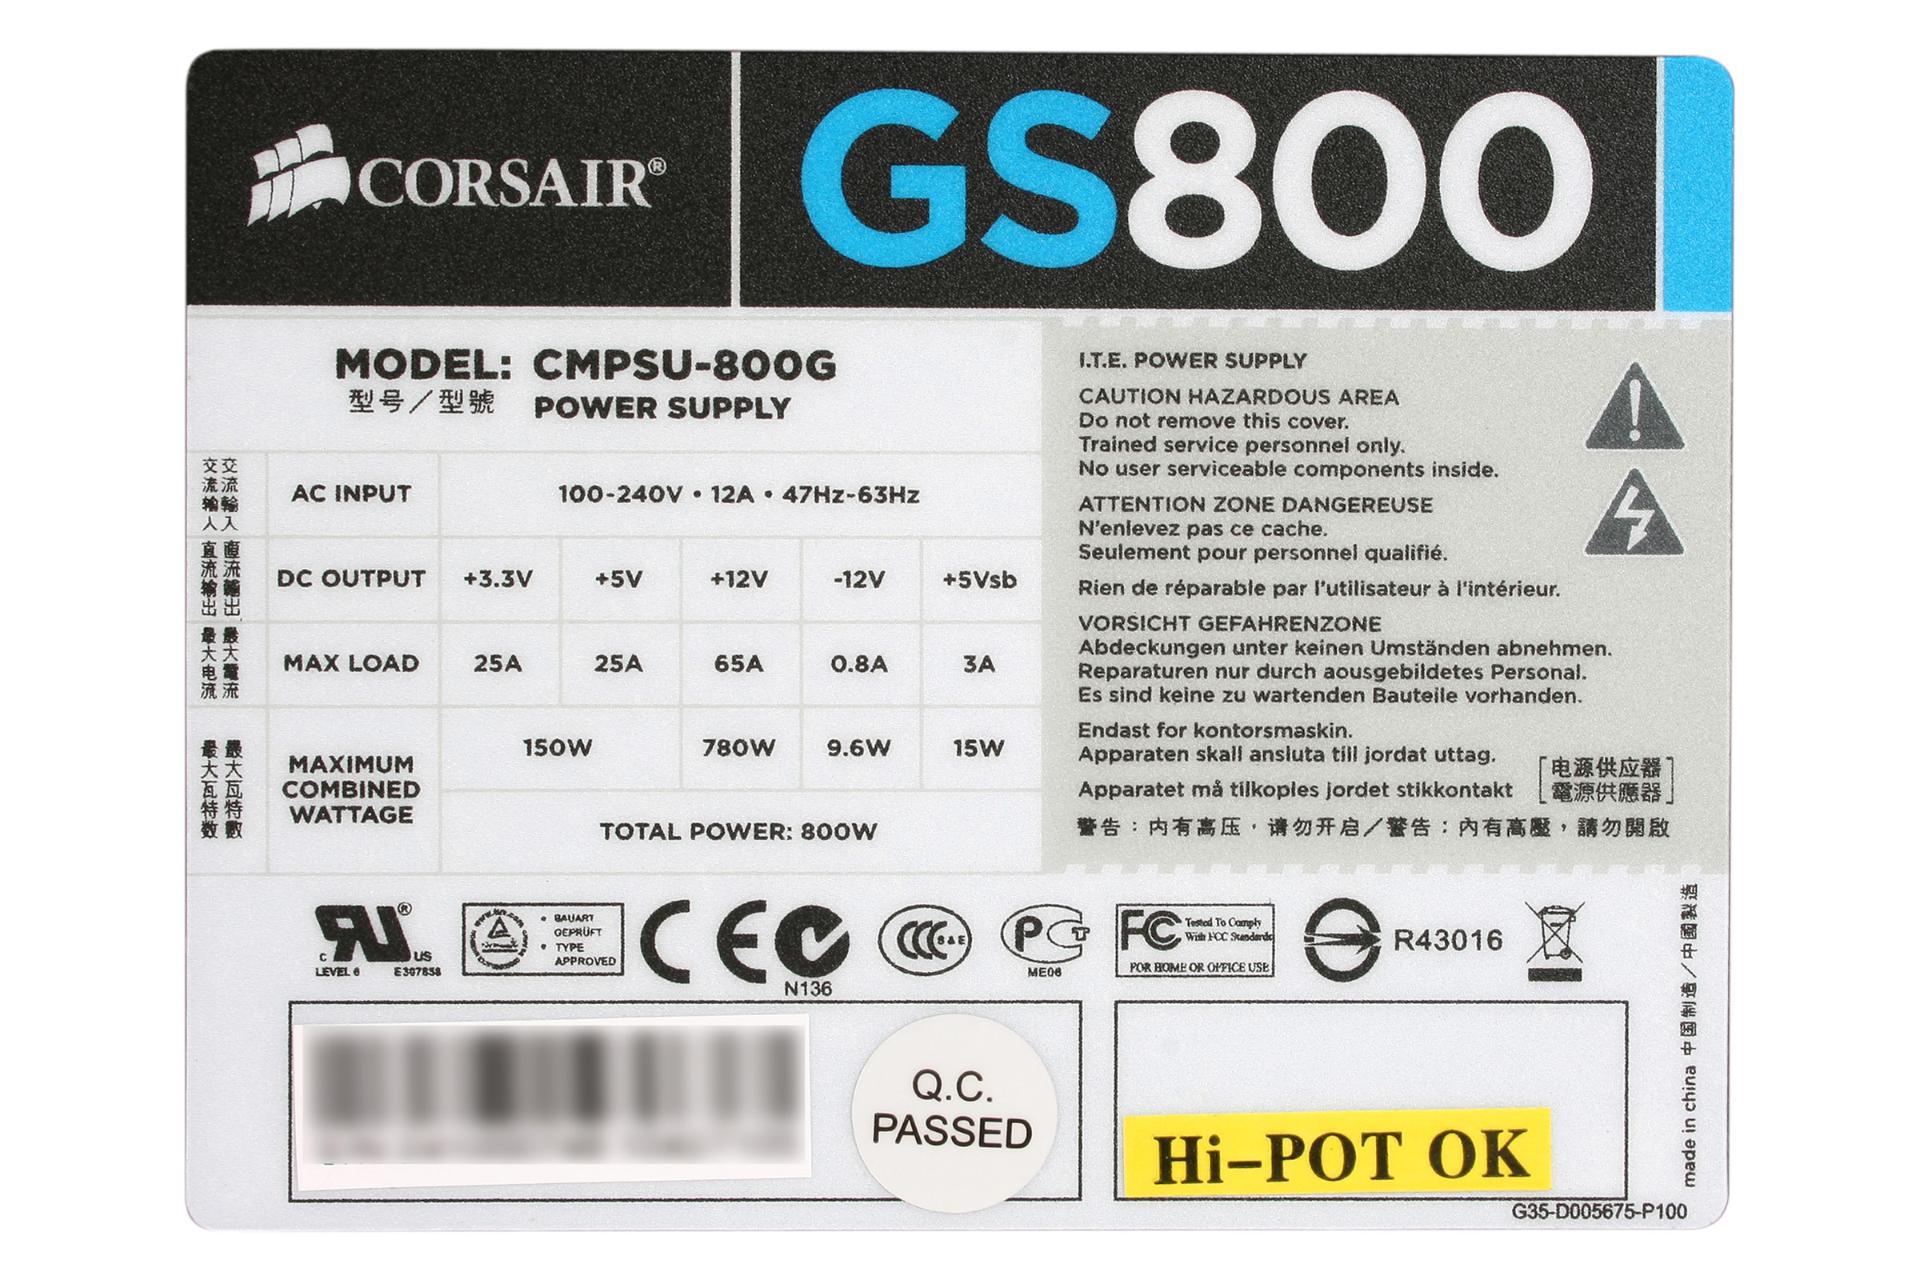 برچسب توضیحات پاور کامپیوتر کورسیر GS800 CMPSU-800G با توان 800 وات